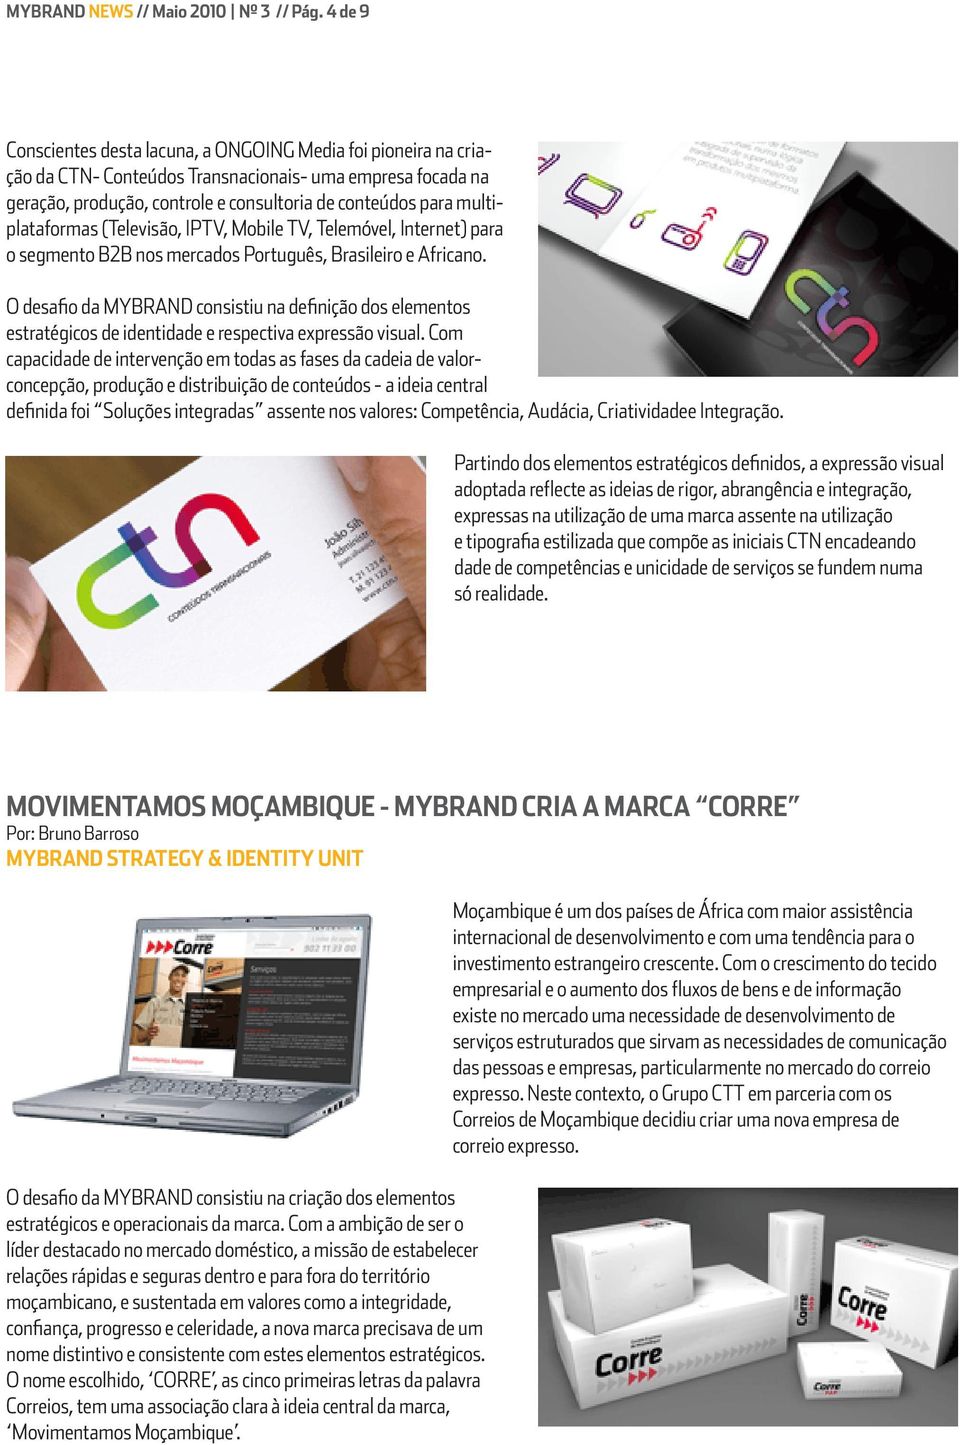 multiplataformas (Televisão, IPTV, Mobile TV, Telemóvel, Internet) para o segmento B2B nos mercados Português, Brasileiro e Africano.